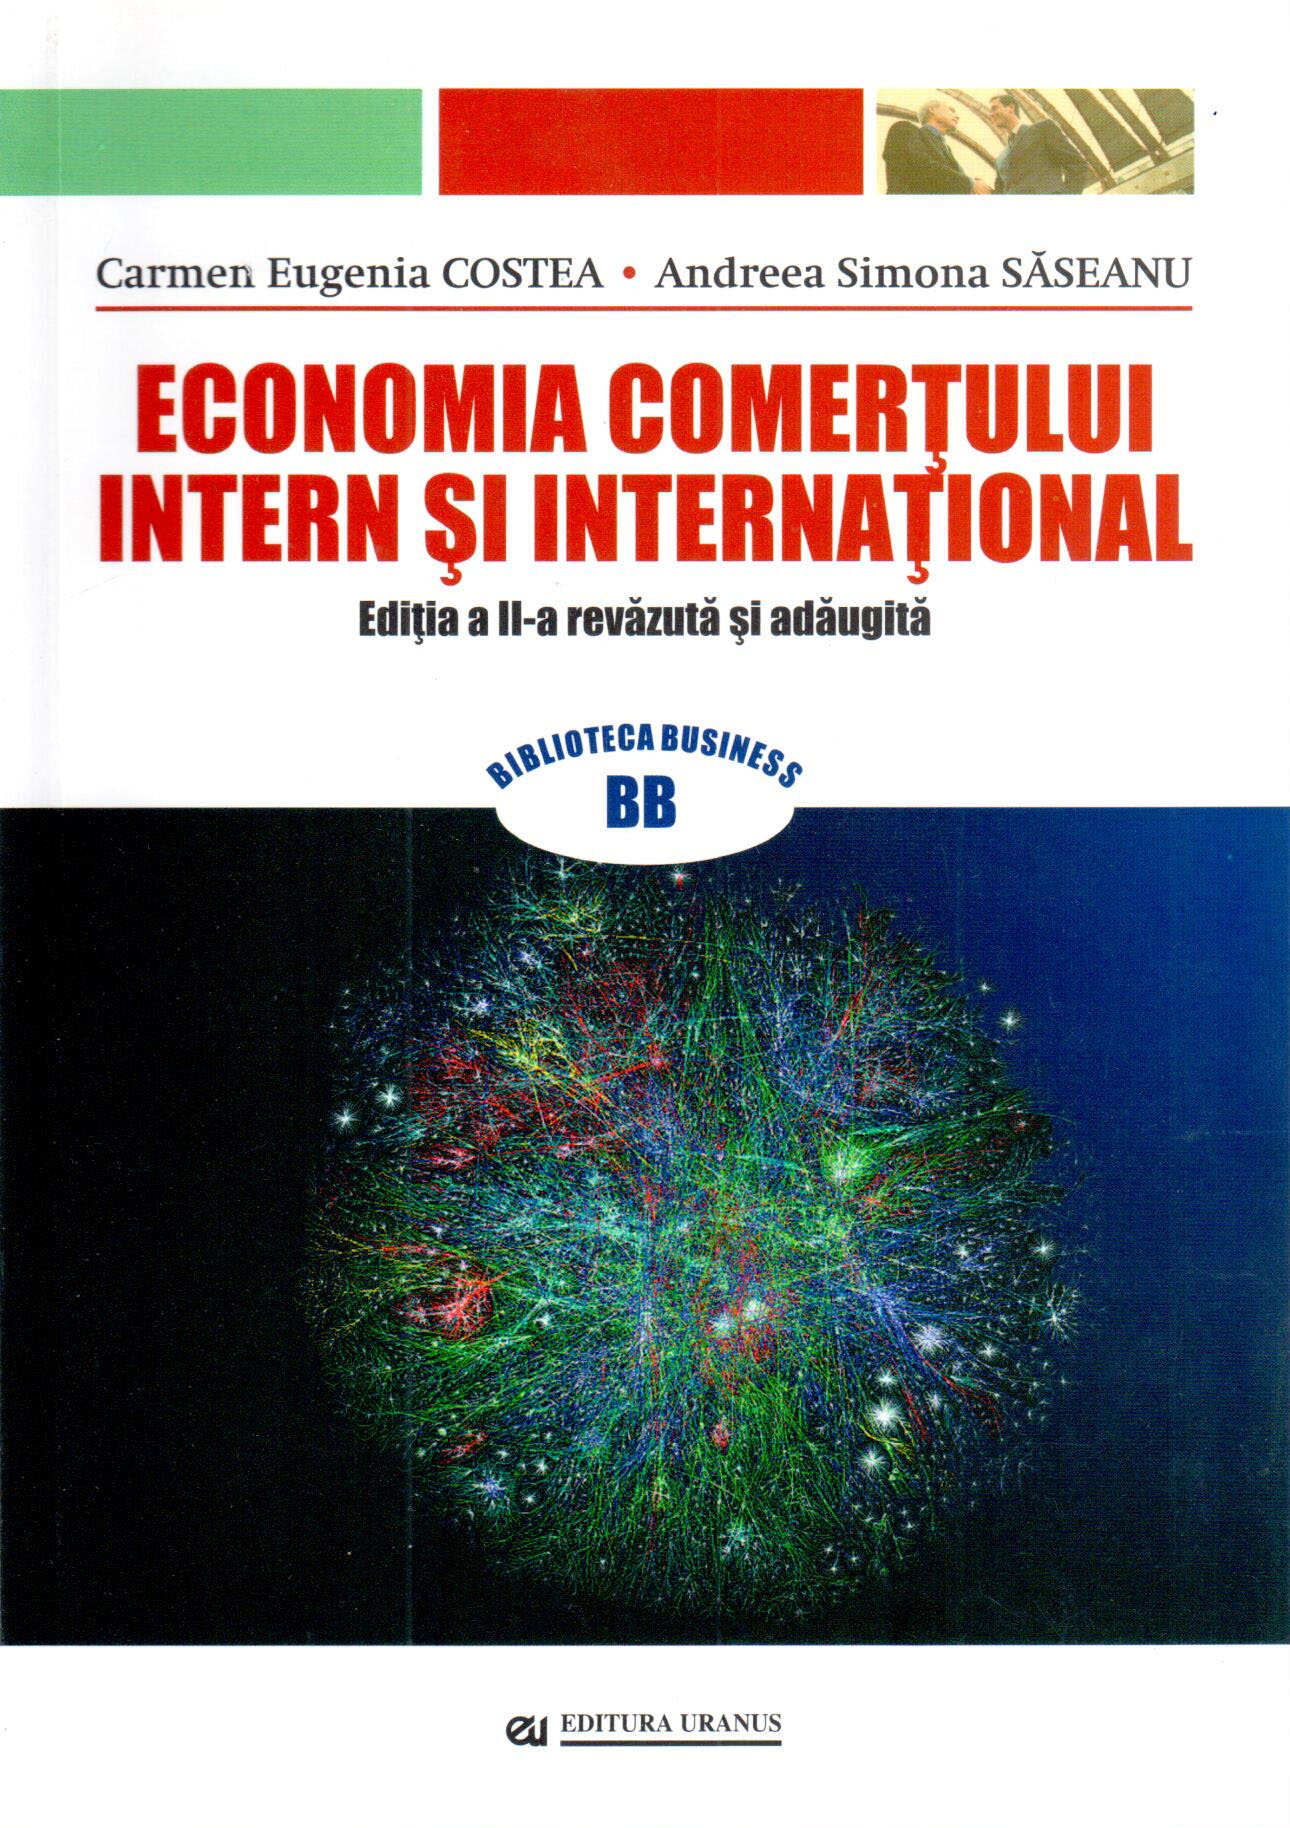 PDF Economia comertului intern si international | Carmen Eugenia Costea, Andreea Simona Saseanu carturesti.ro Business si economie